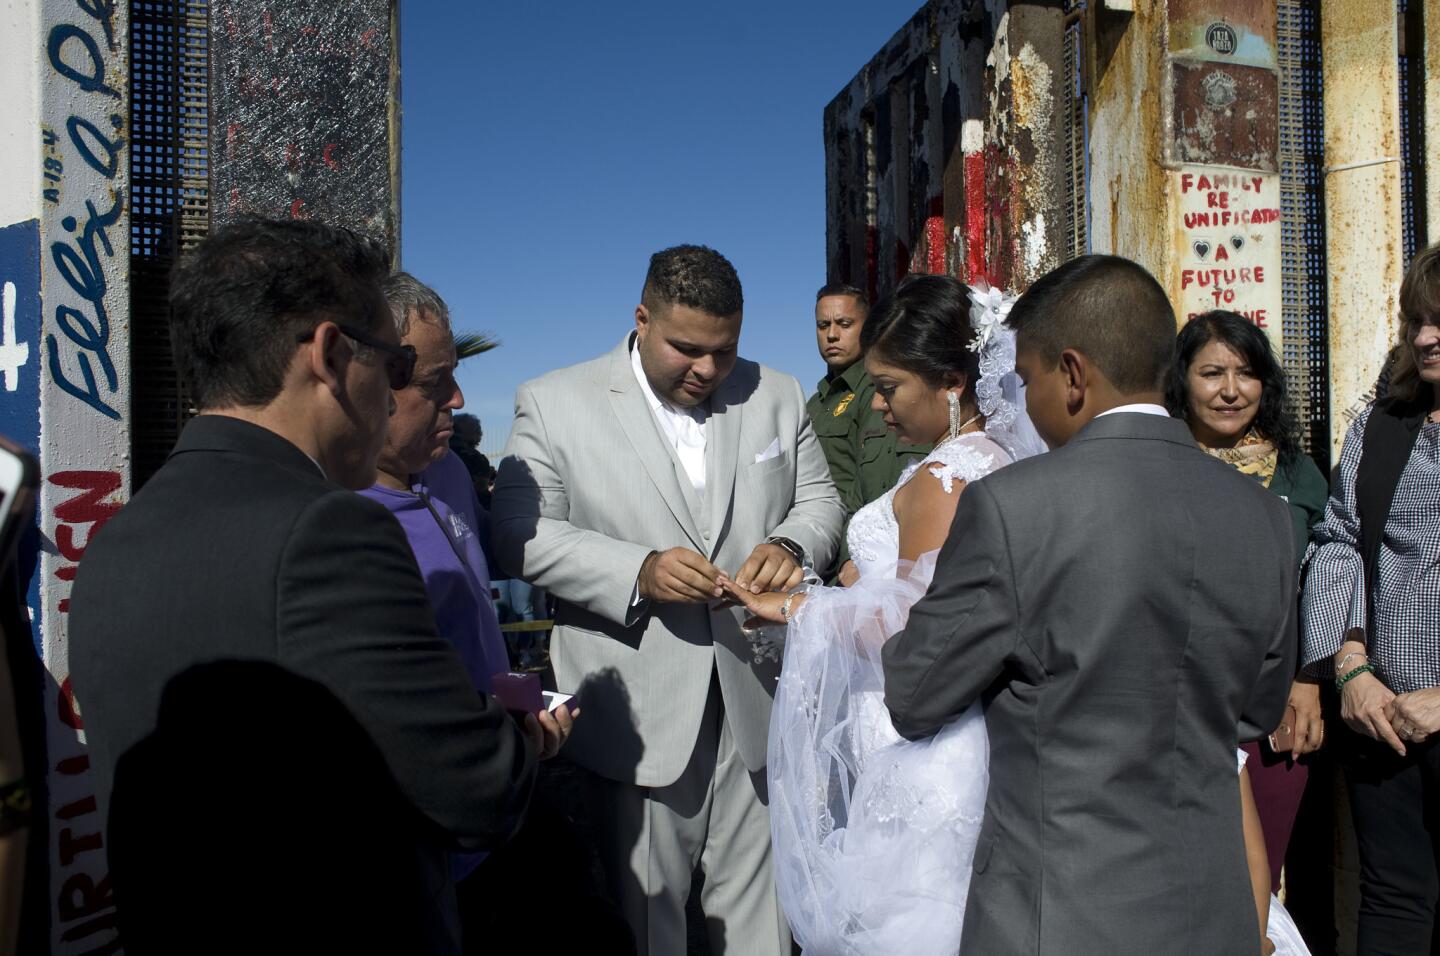 El estadounidense Brian Houston le pone un anillo a su prometida la mexicana Evelia Reyes durante la celebración de su boda en una de las puertas de la valla fronteriza entre EEUU y México en Tijuana, que abrió brevemente...